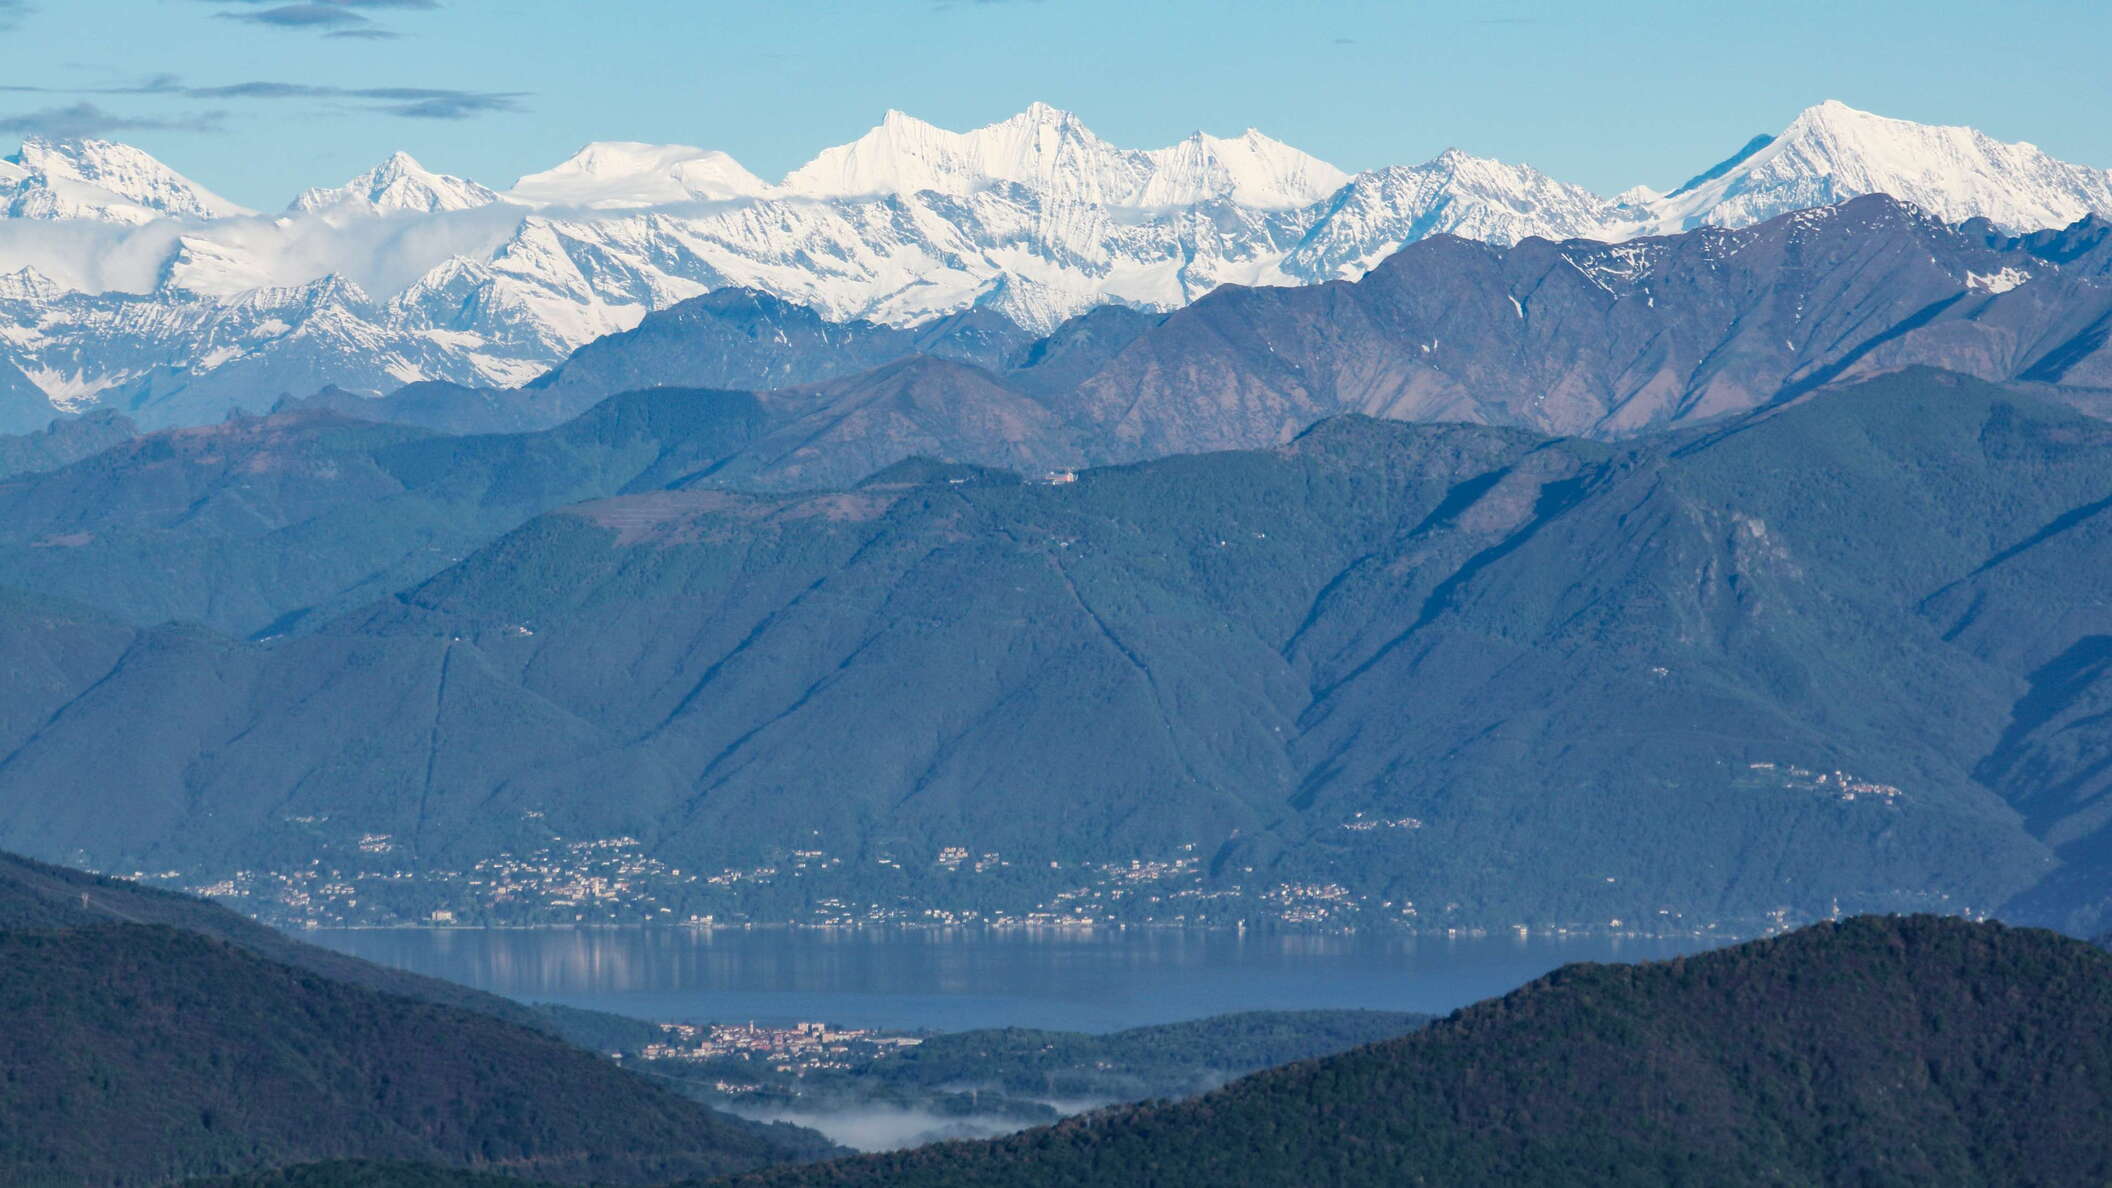 Lago Maggiore and Valais Alps